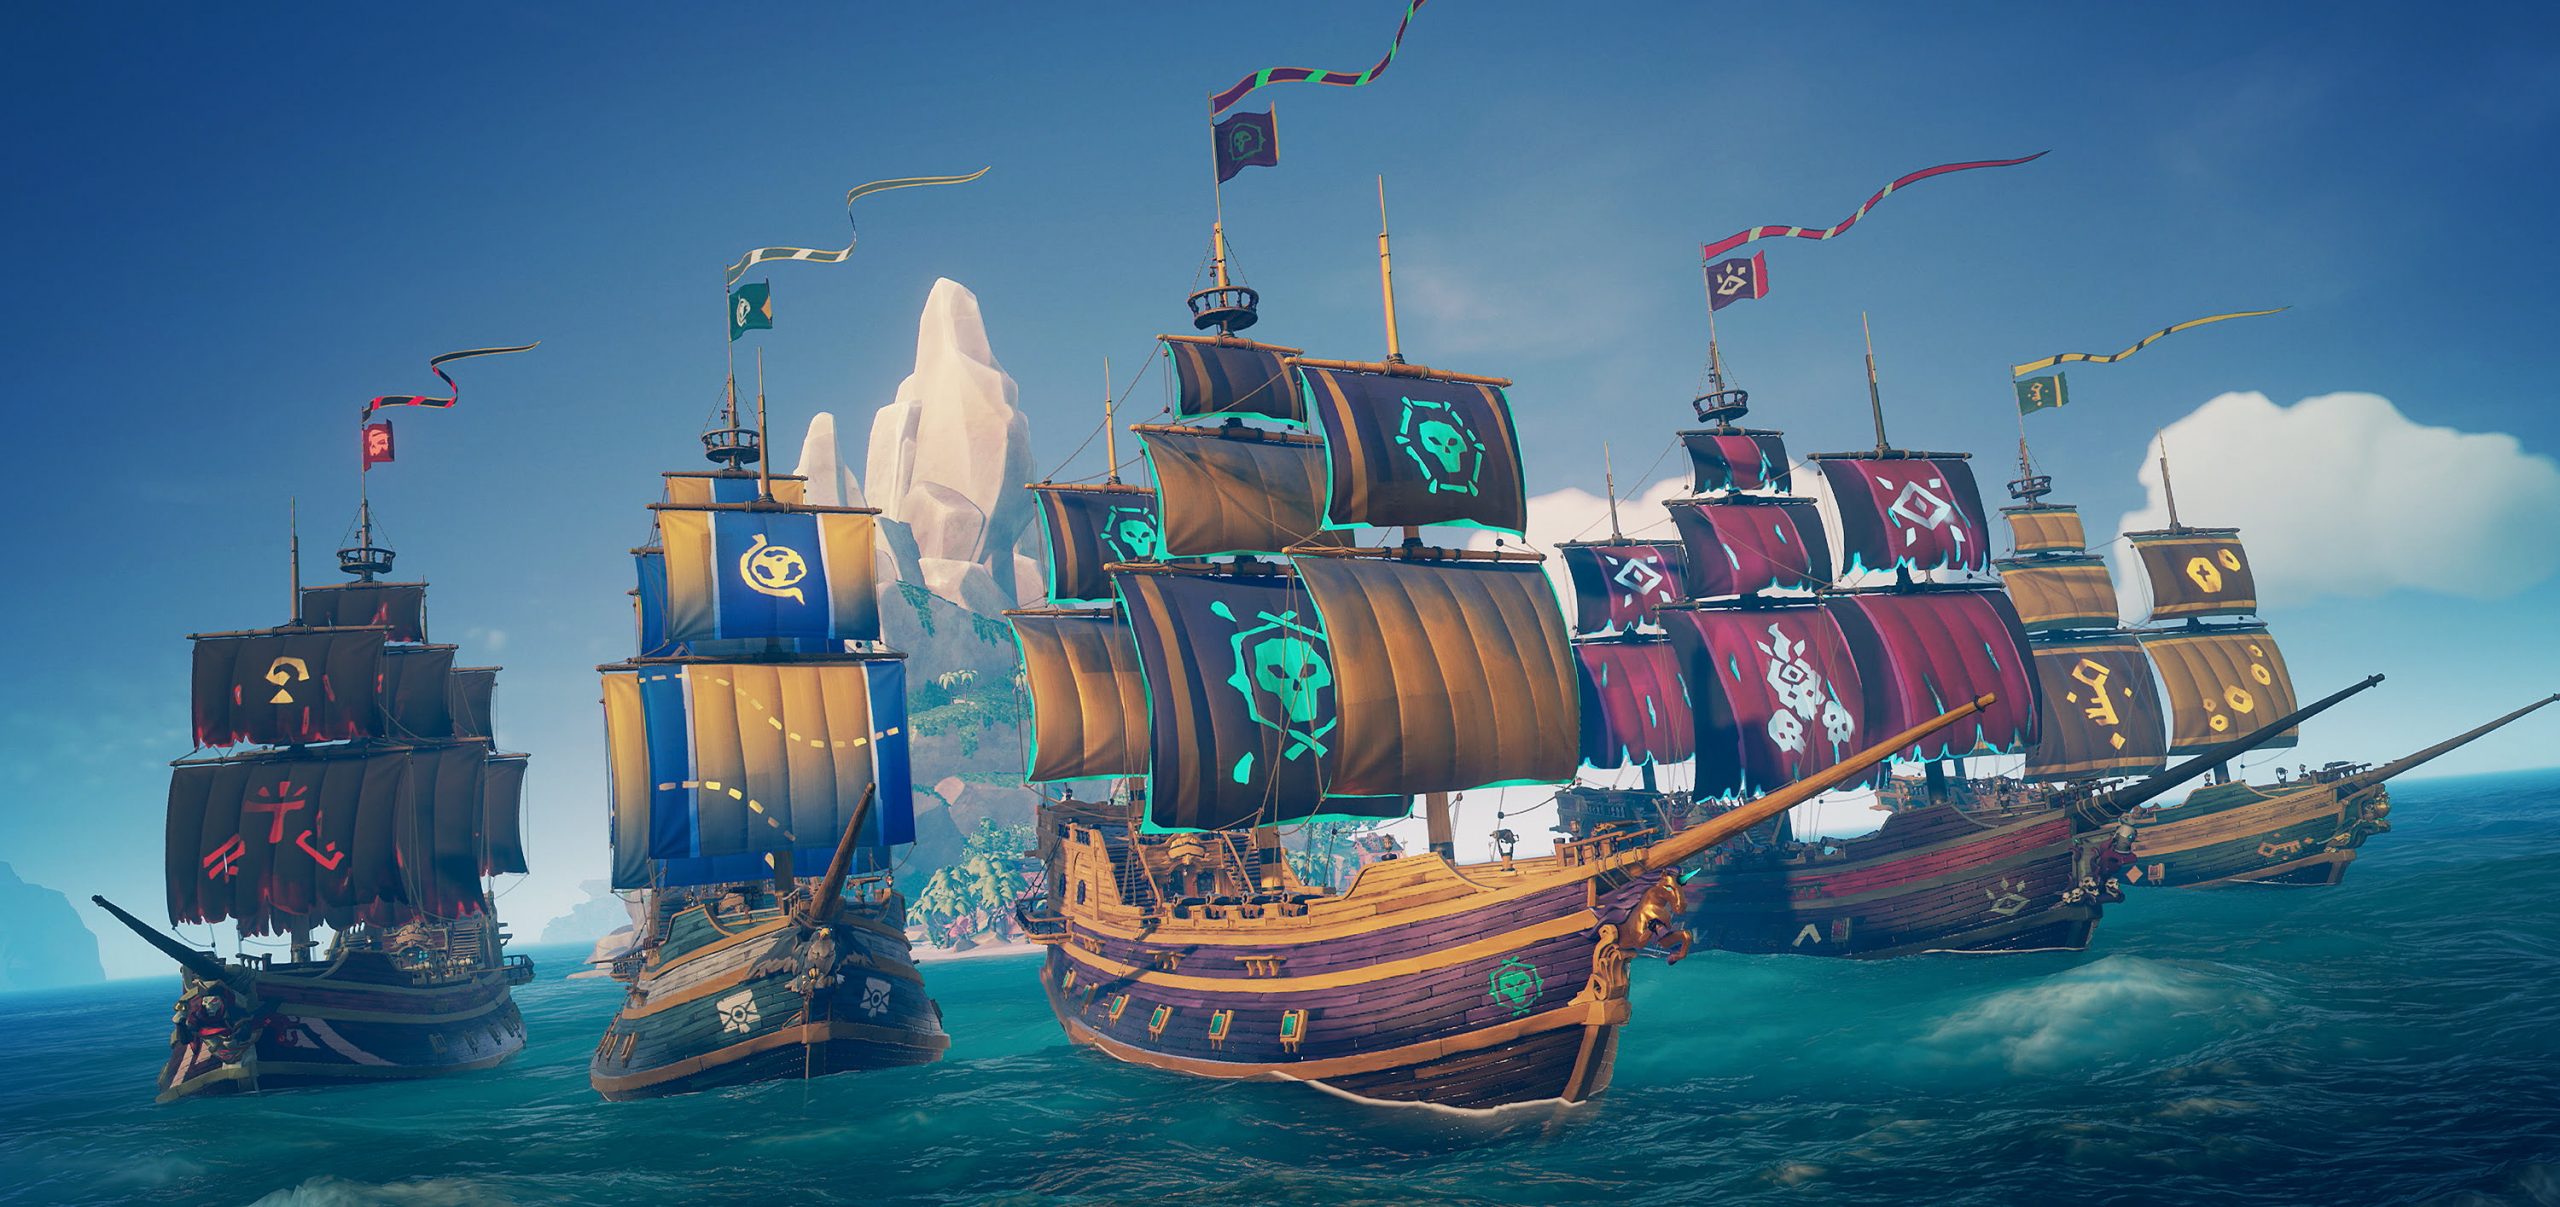 بازی دریای دزدان Sea of Thieves: کاوش برای شهرت و ثروت در اقیانوس از بهترین بازی های ایکس باکس!